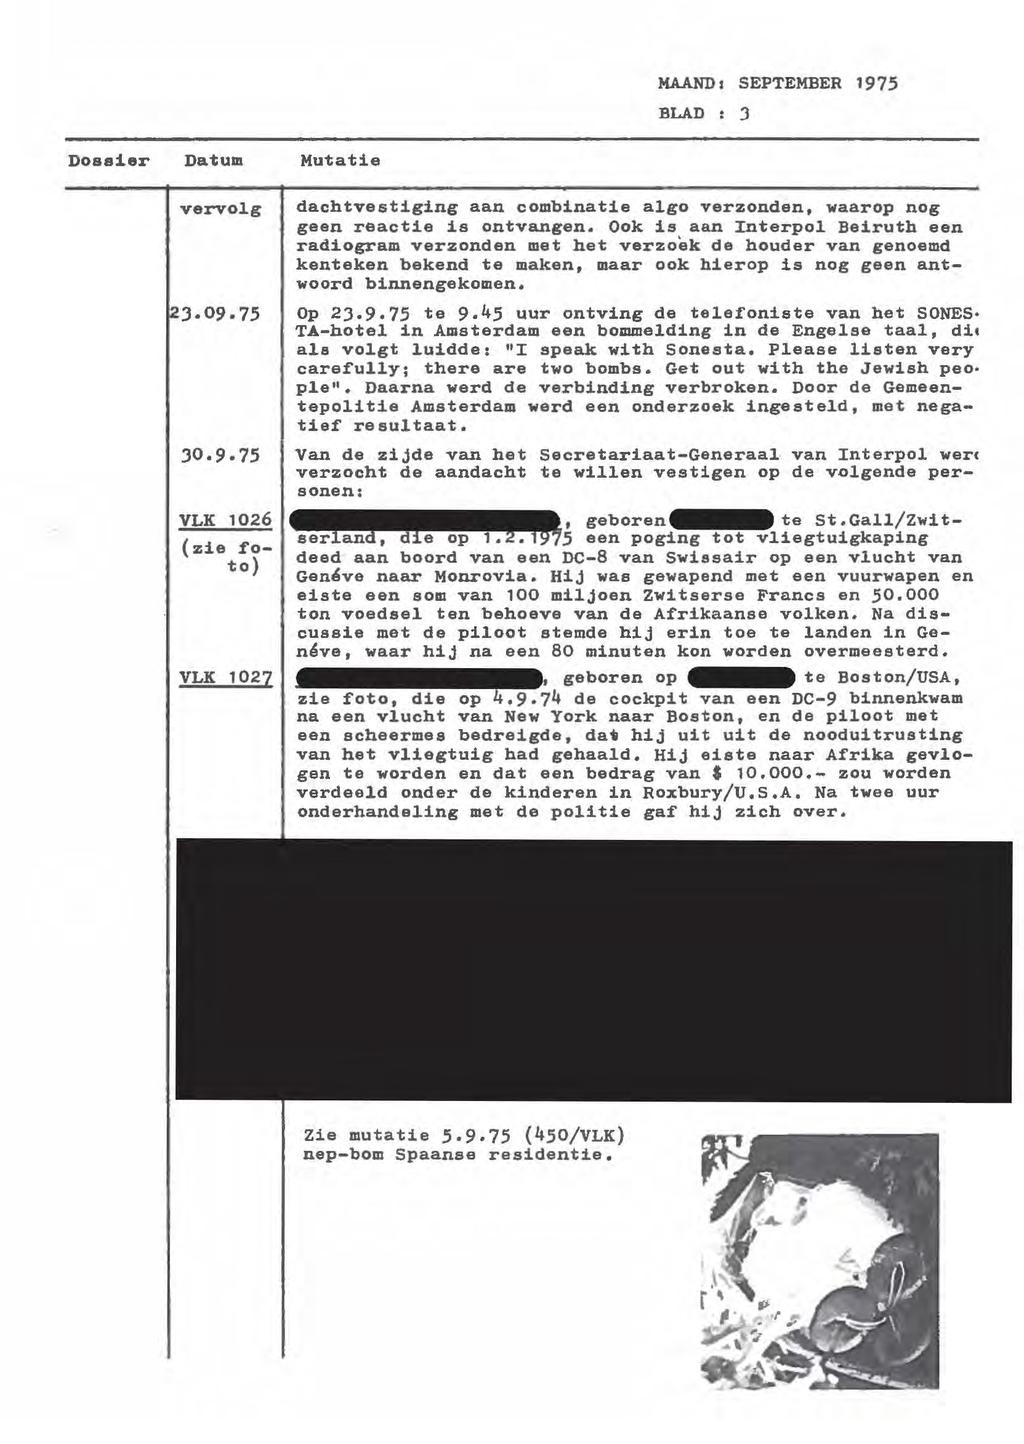 MAAND2 SEPTEMBER 1975 BLAD : 3 Dossier Datum vervol.g VLK 1026 (zie foto) VLK 1027 Mutatie dachtvestiging aan combinatie algo verzonden, waarop nog geen reactie is ontvangen.